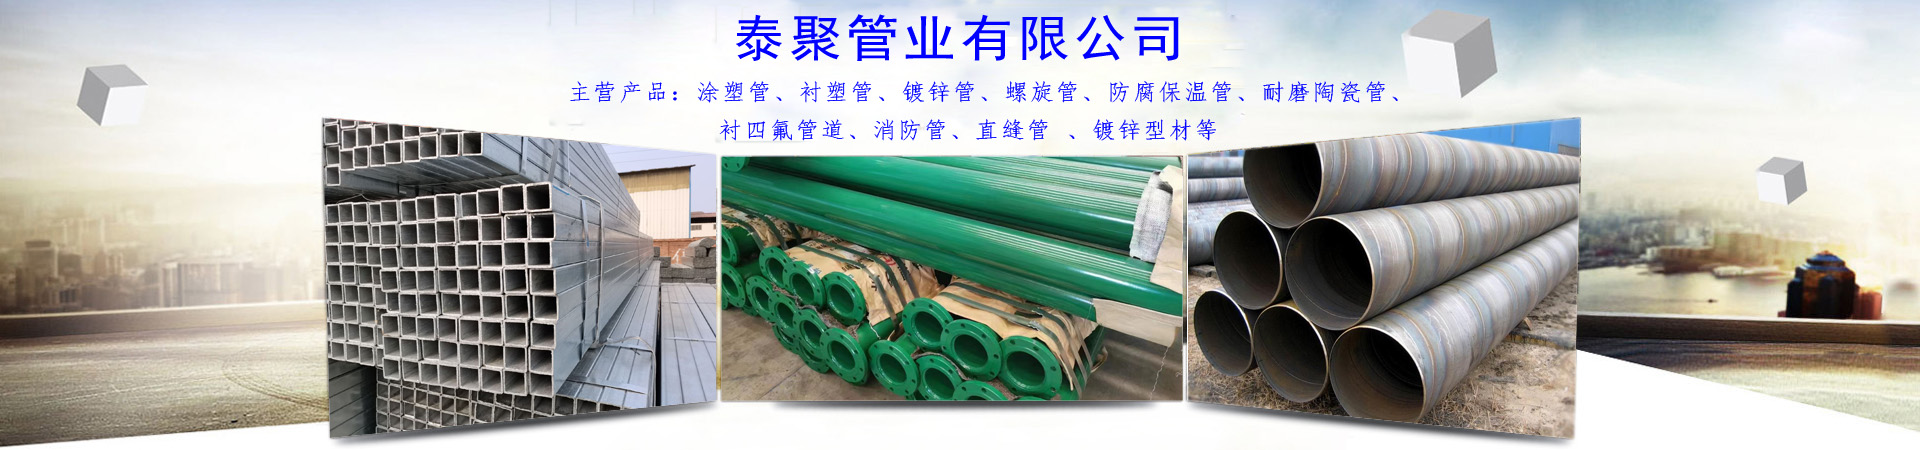 耐磨陶瓷管、杭州本地耐磨陶瓷管、杭州、杭州耐磨陶瓷管